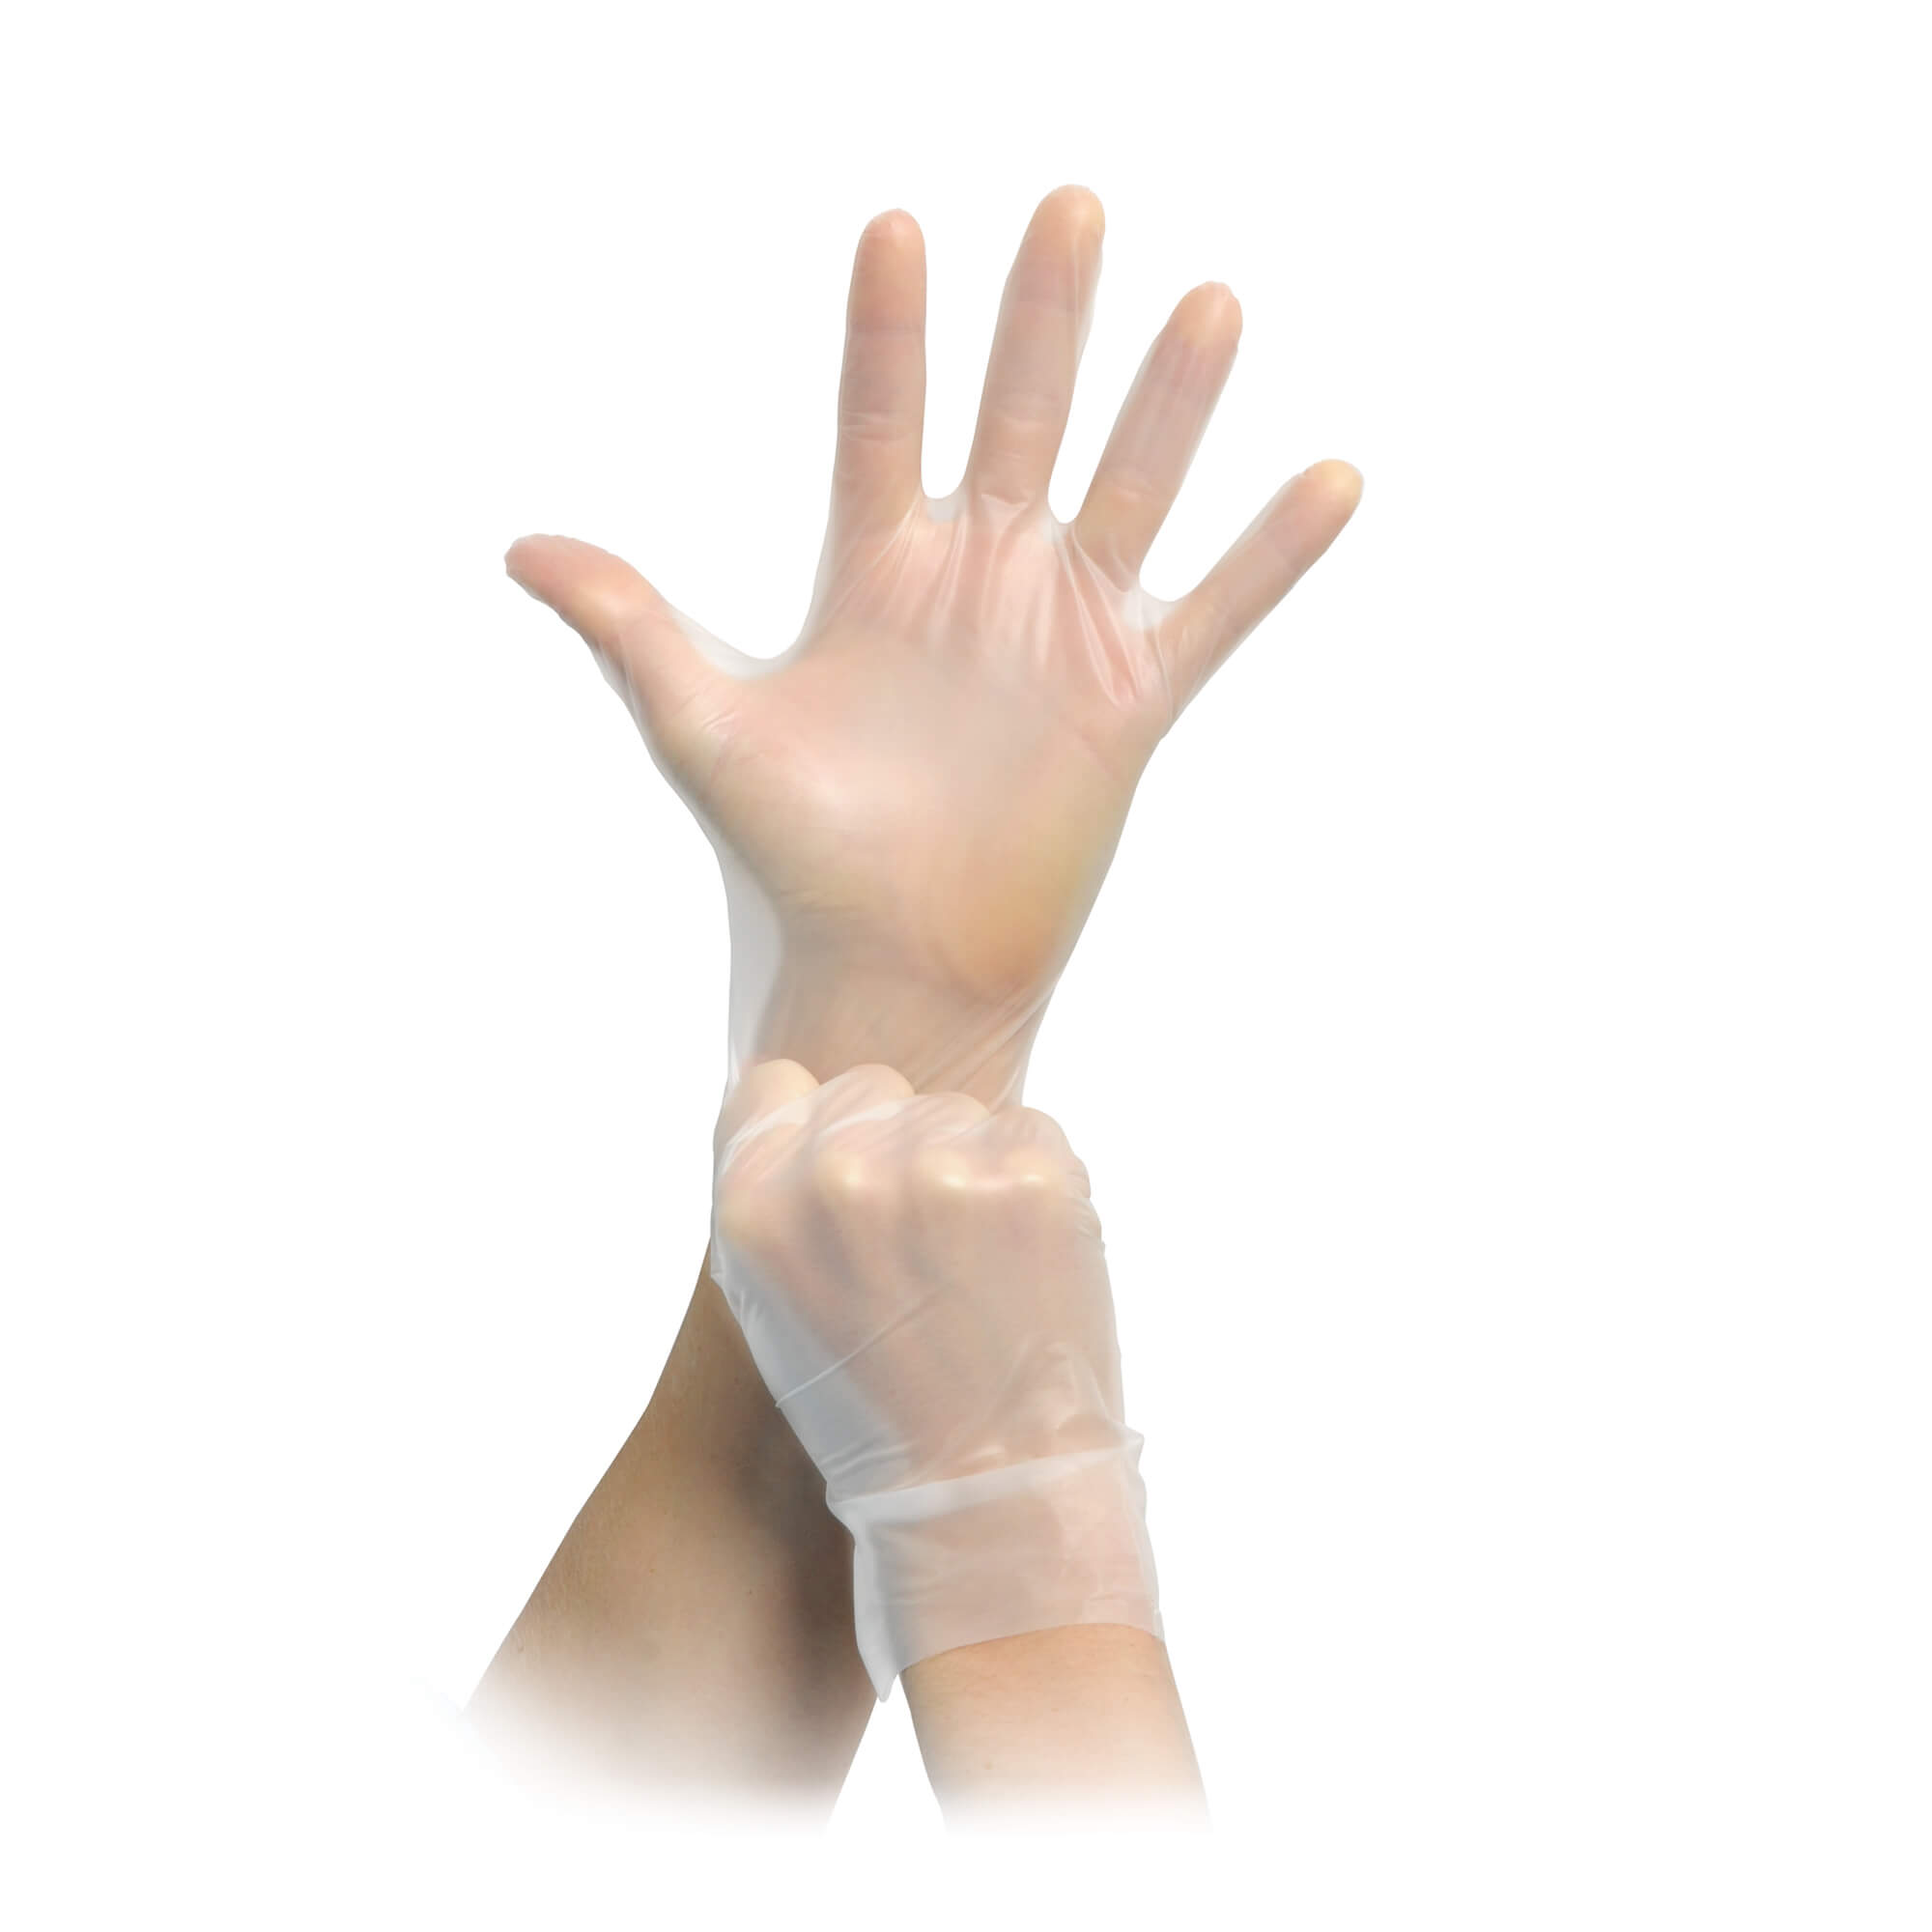 PE-Handschuhe - Innovative, unsterile Einmalhandschuhe aus veredeltem PE in transparenter Optik für den Einmalgebrauch in der Pflege, in der Lebensmittelindustrie oder Industrie.